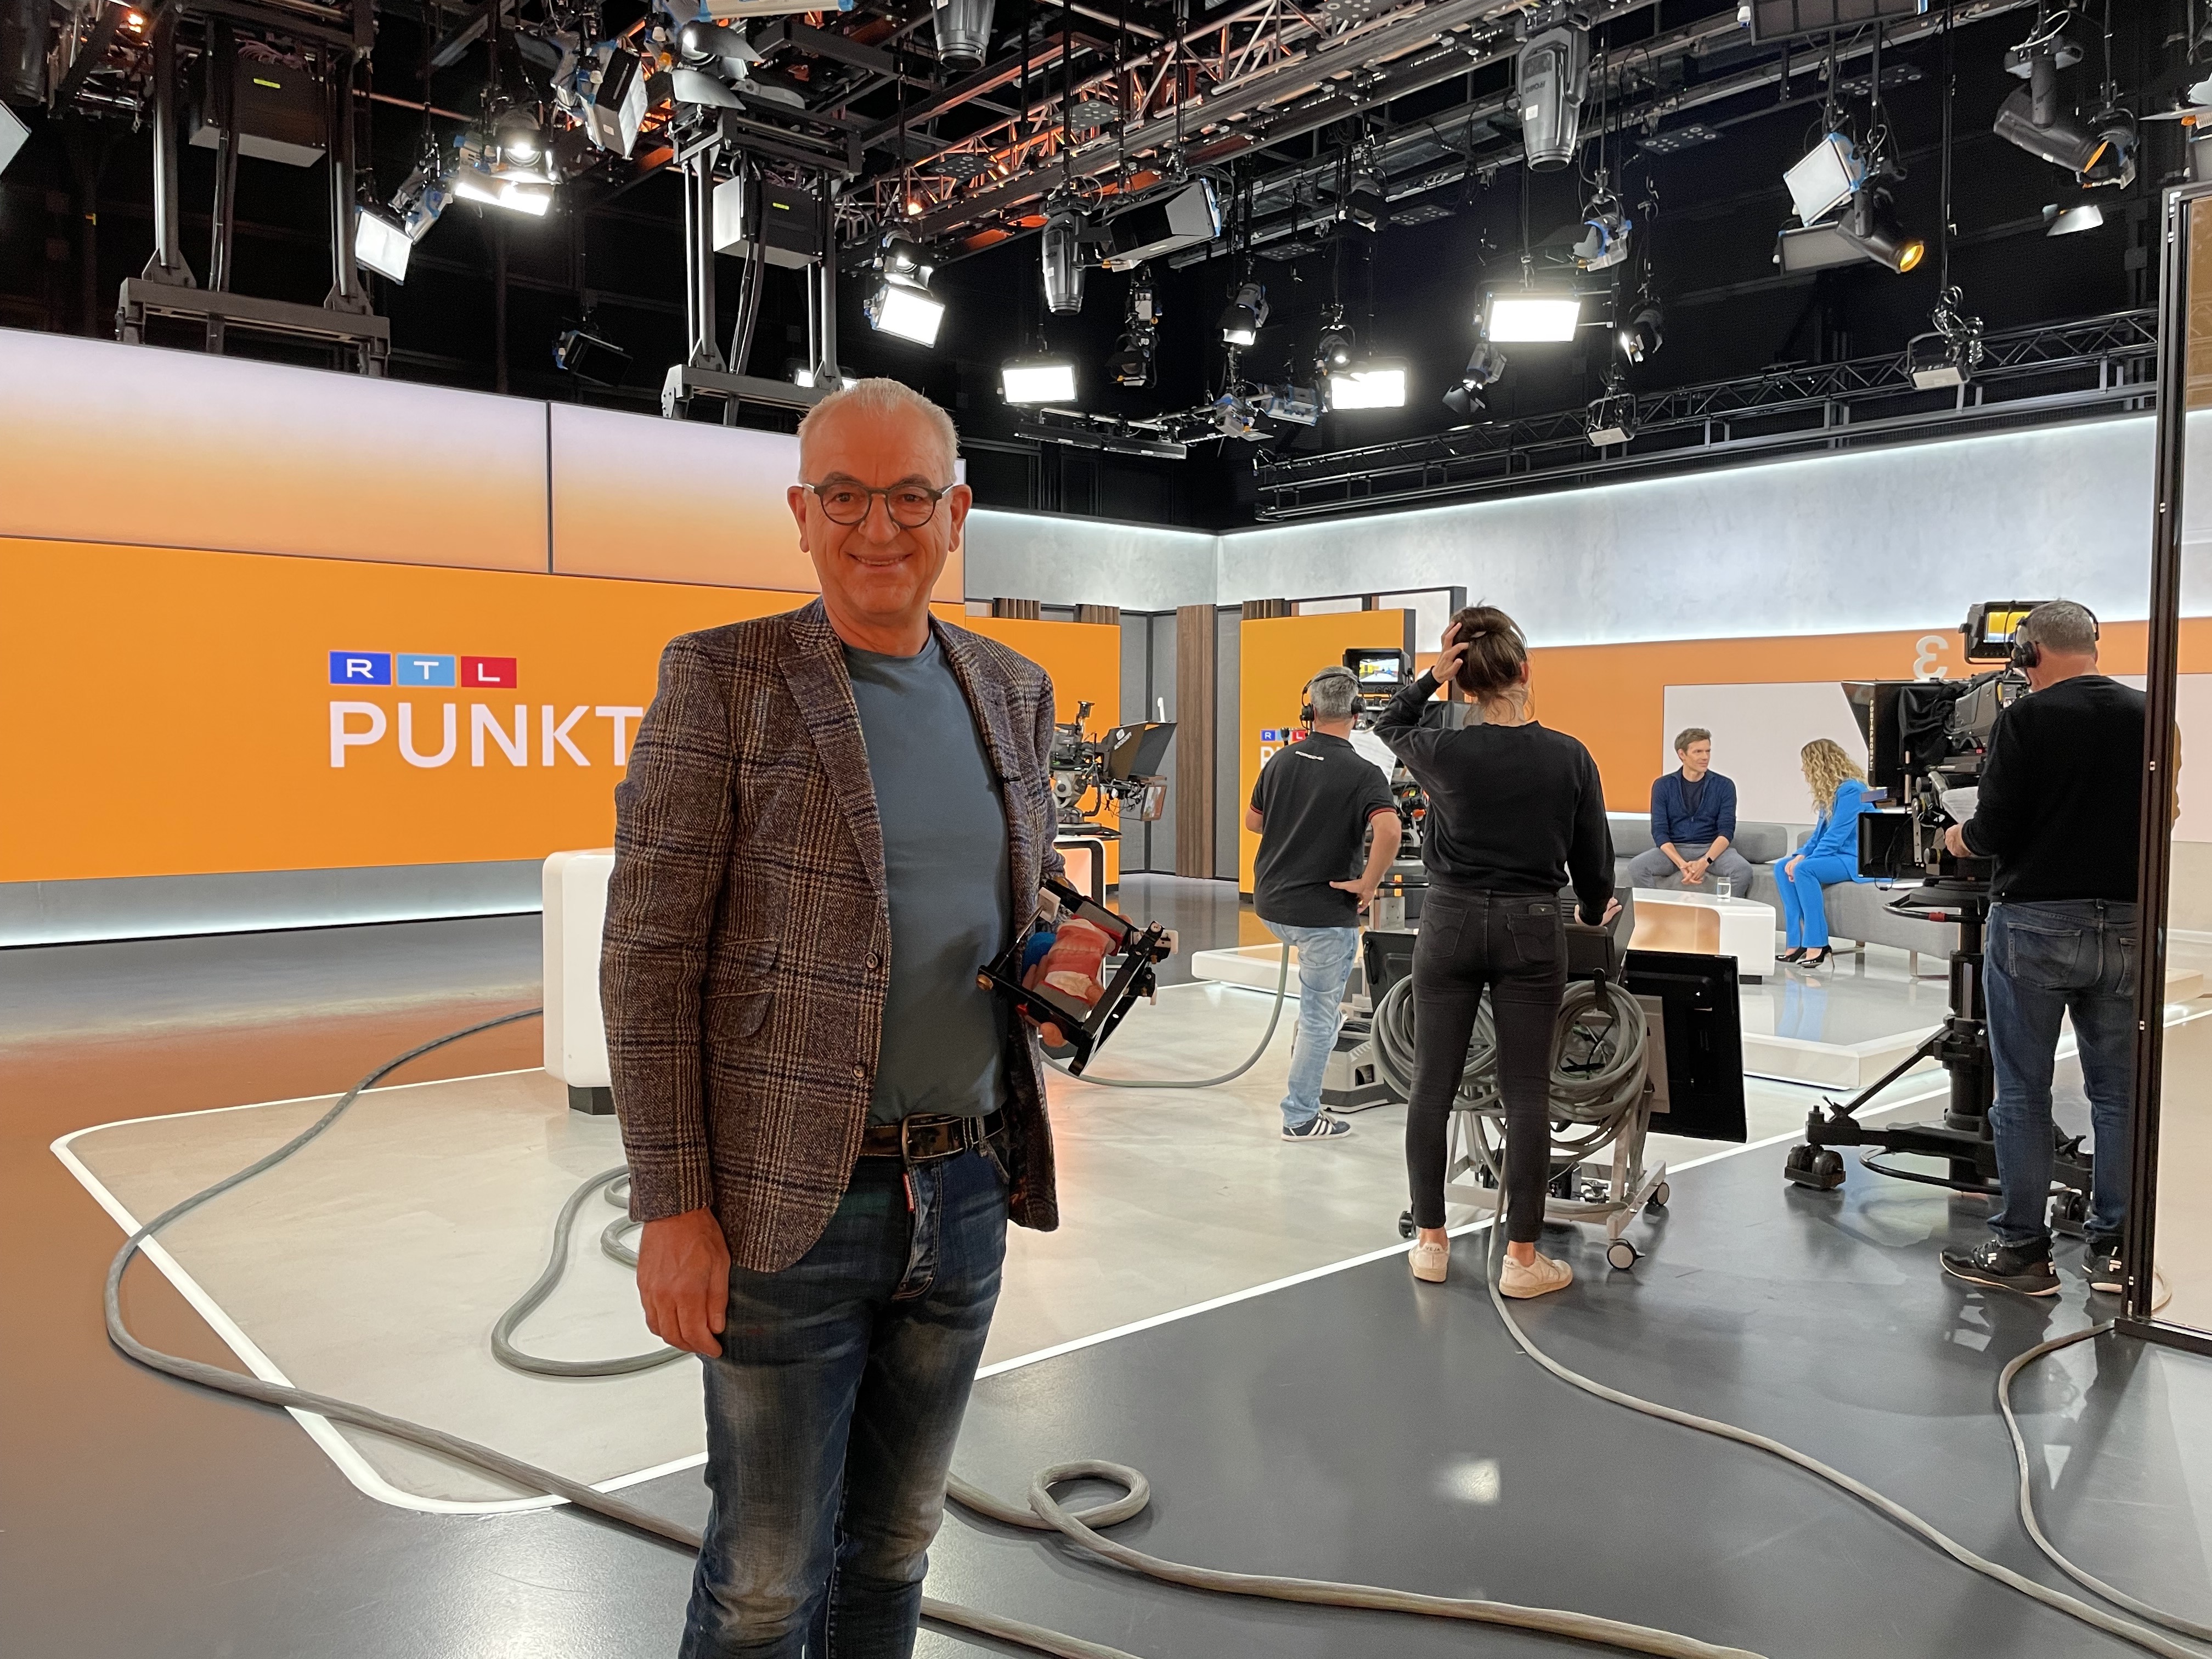 Dr. Gerd Reichardt live im TV bei RTL Punkt 12  - Interview und CMD Erfahrungsbericht